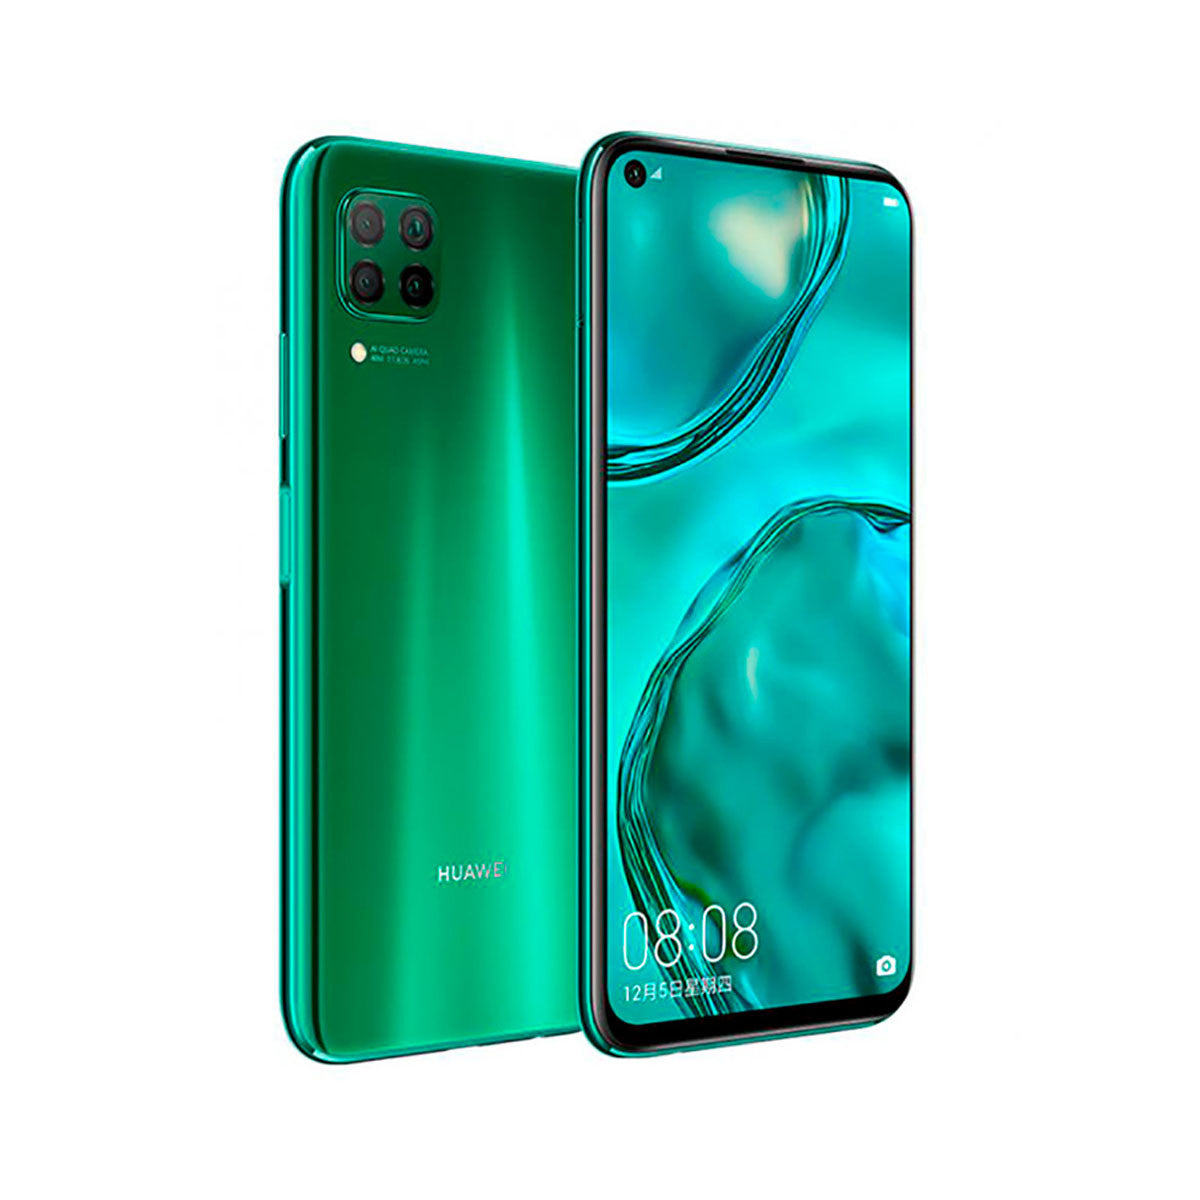 Huawei P40 Lite 6GB/128GB Green (Crush Green) Dual SIM Smartphone | Huawei